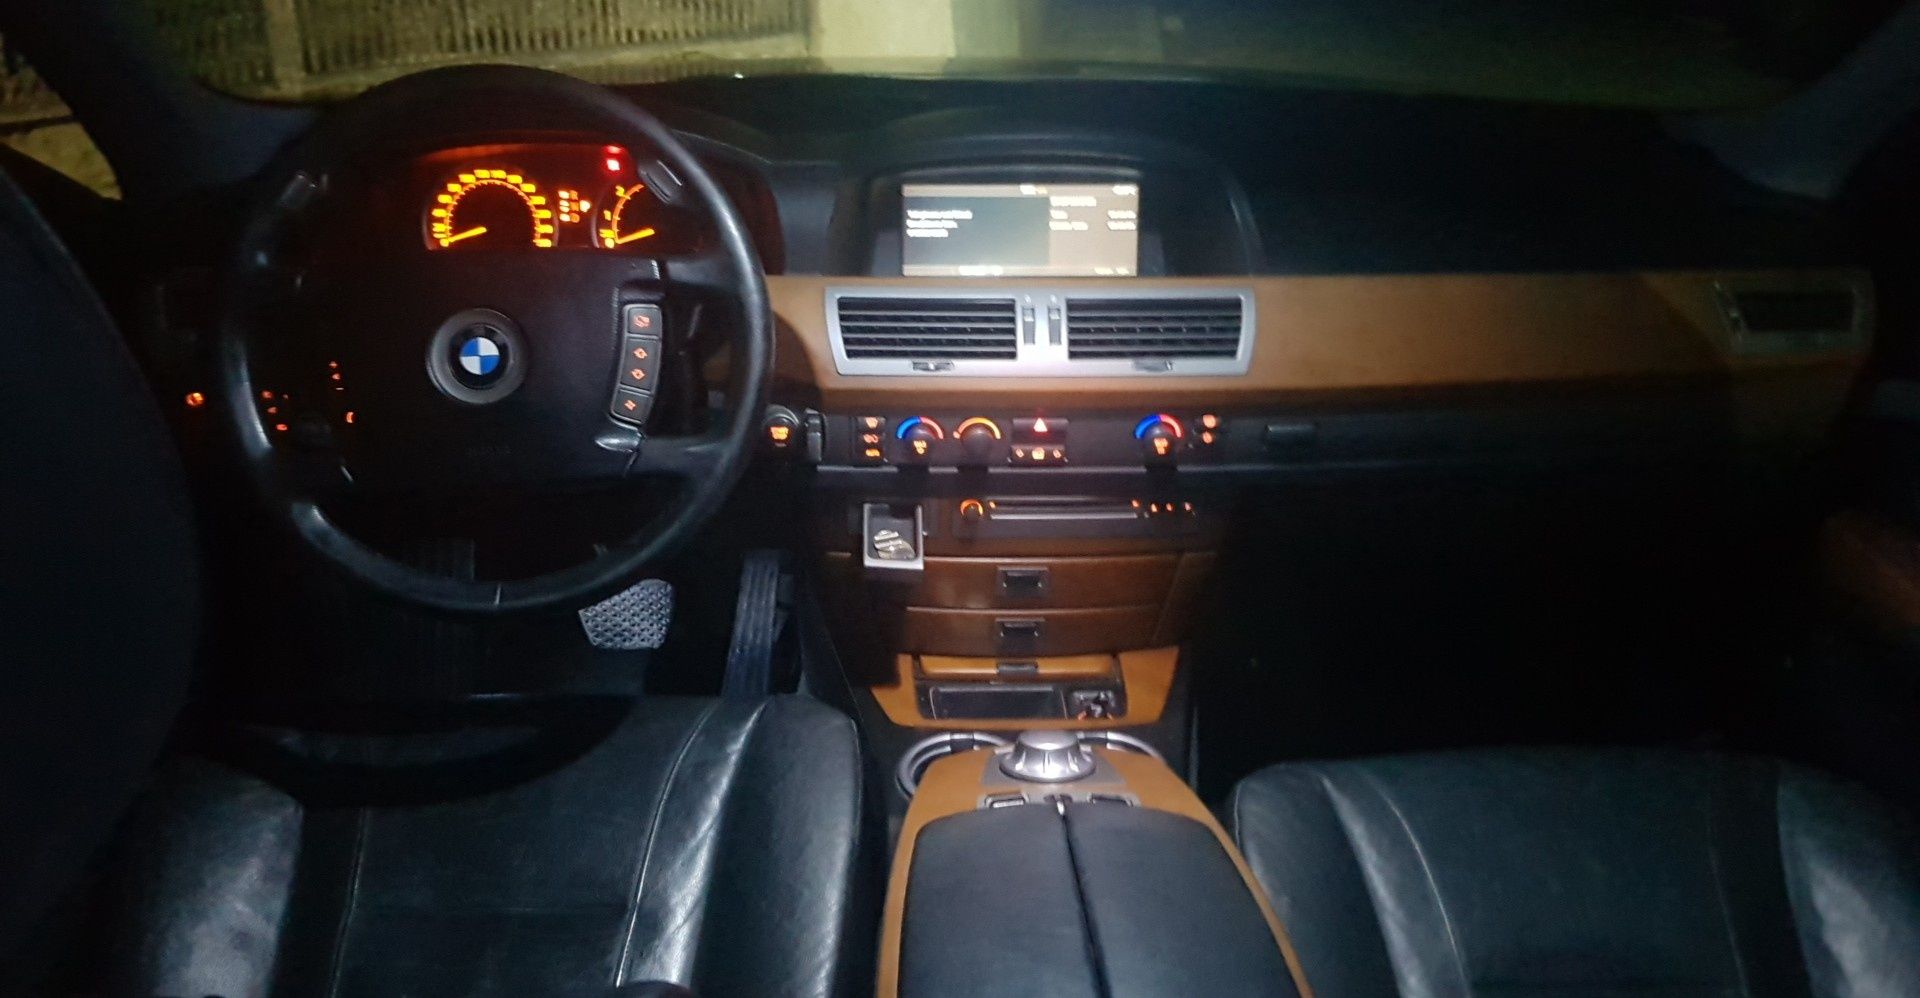 Kit conversie BMW seria 7 e65 negru si gri